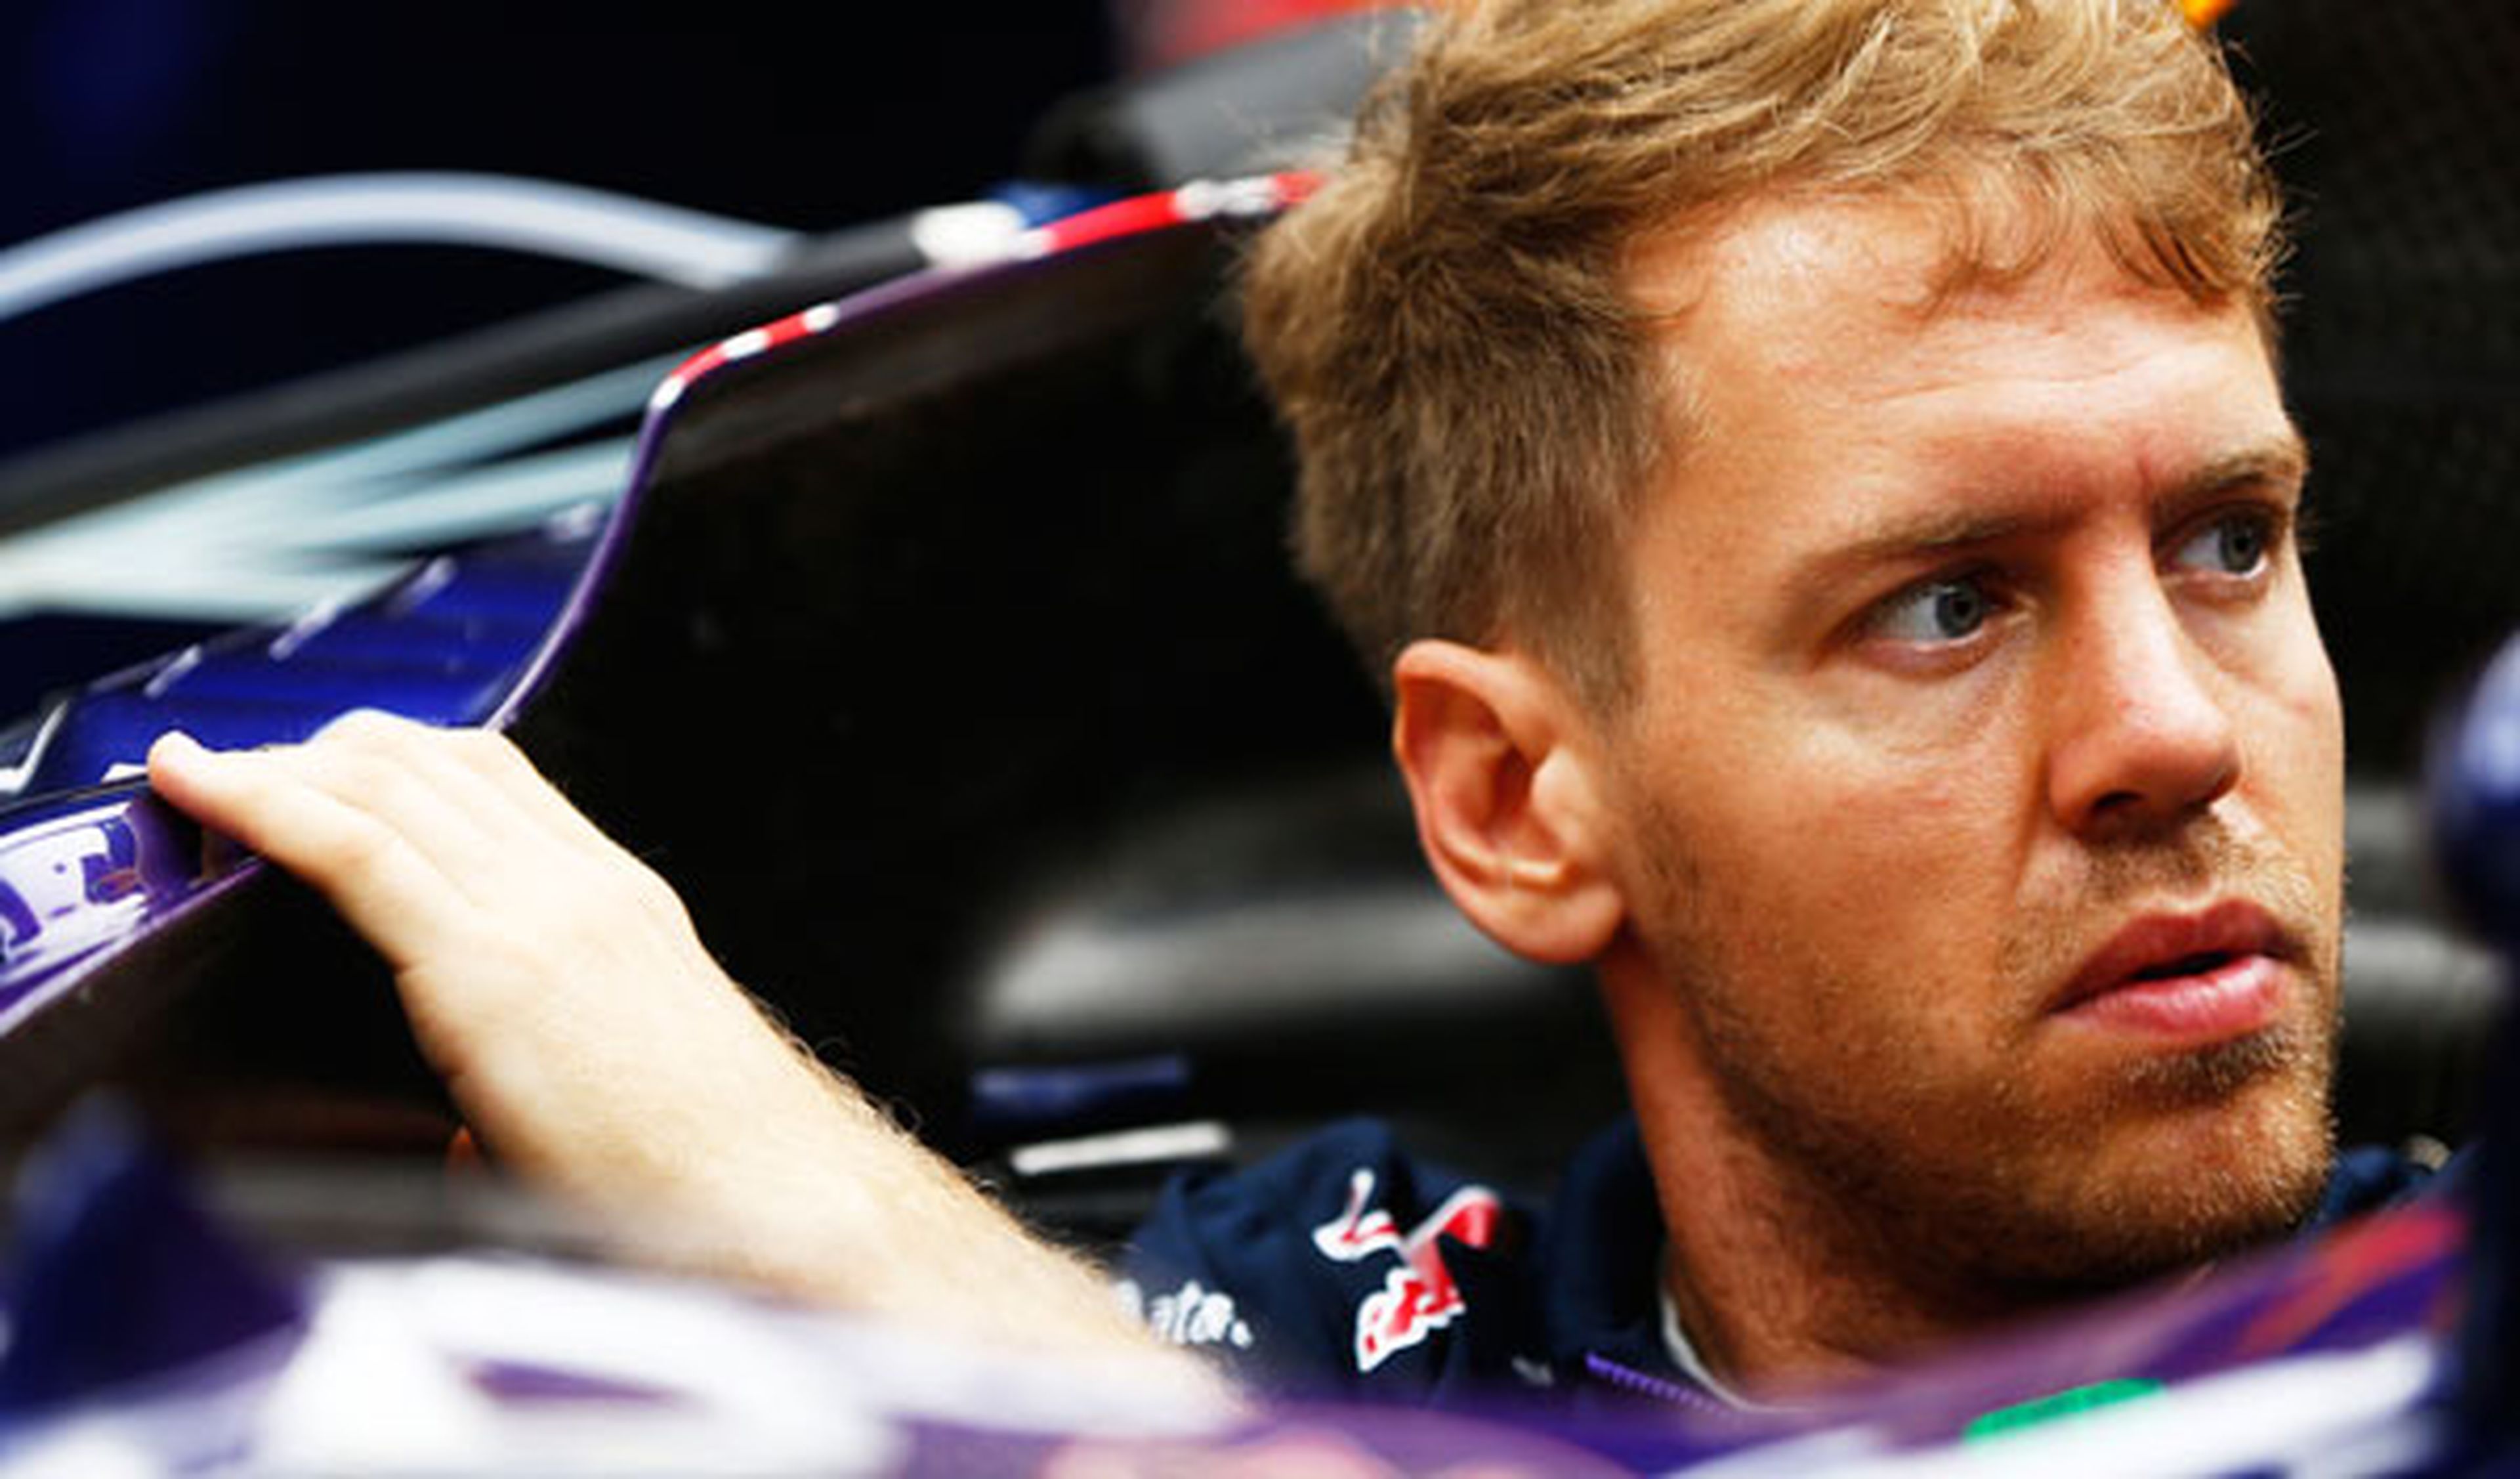 Problemas para Vettel en Mónaco: "perdimos el ERS"